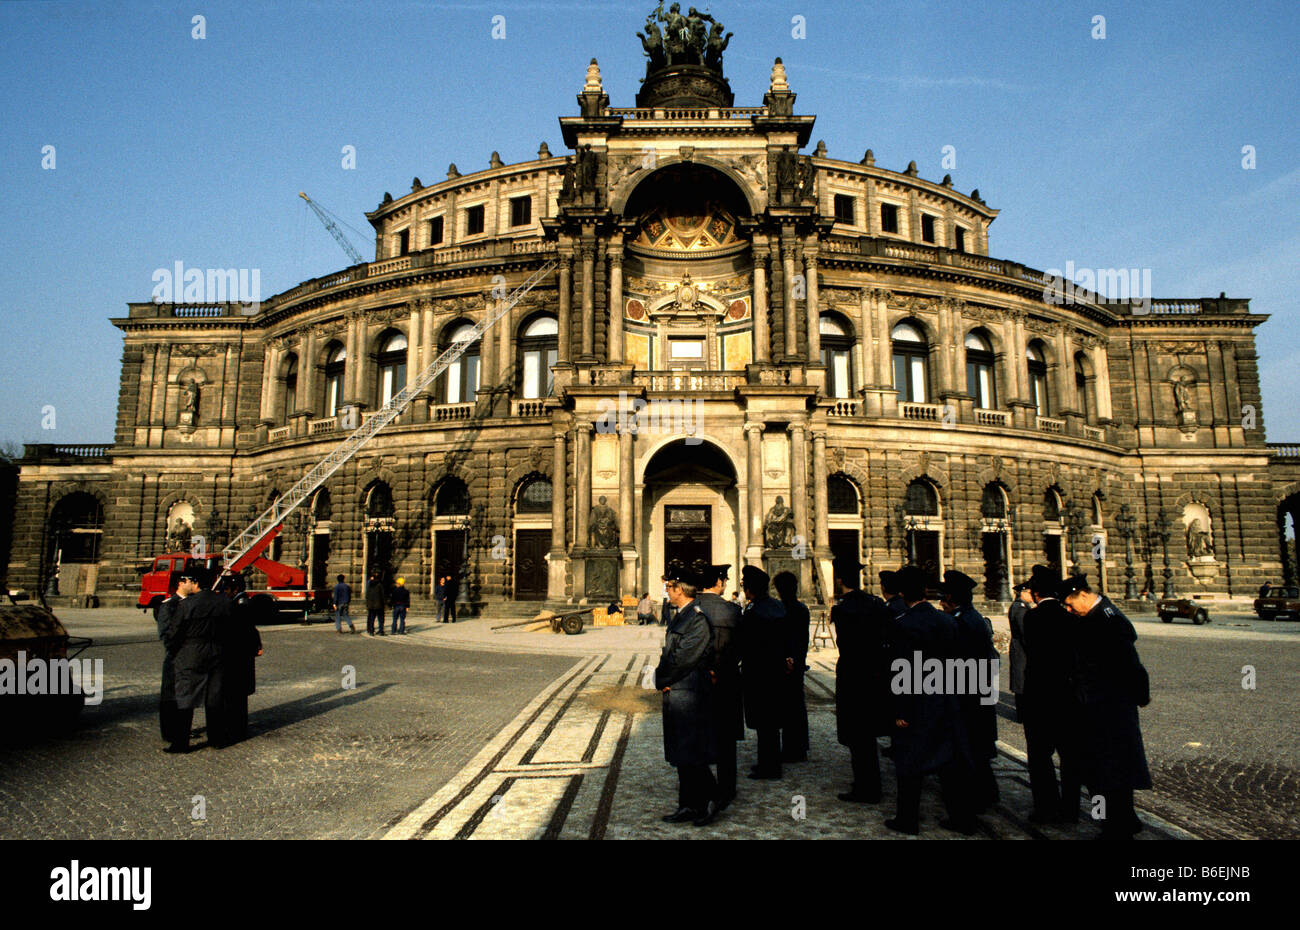 Semperoper Opernhaus, historisches Bild gescannt aus Folie, Dresden,  Sachsen, DDR, Ostdeutschland, Deutschland, Europa Stockfotografie - Alamy